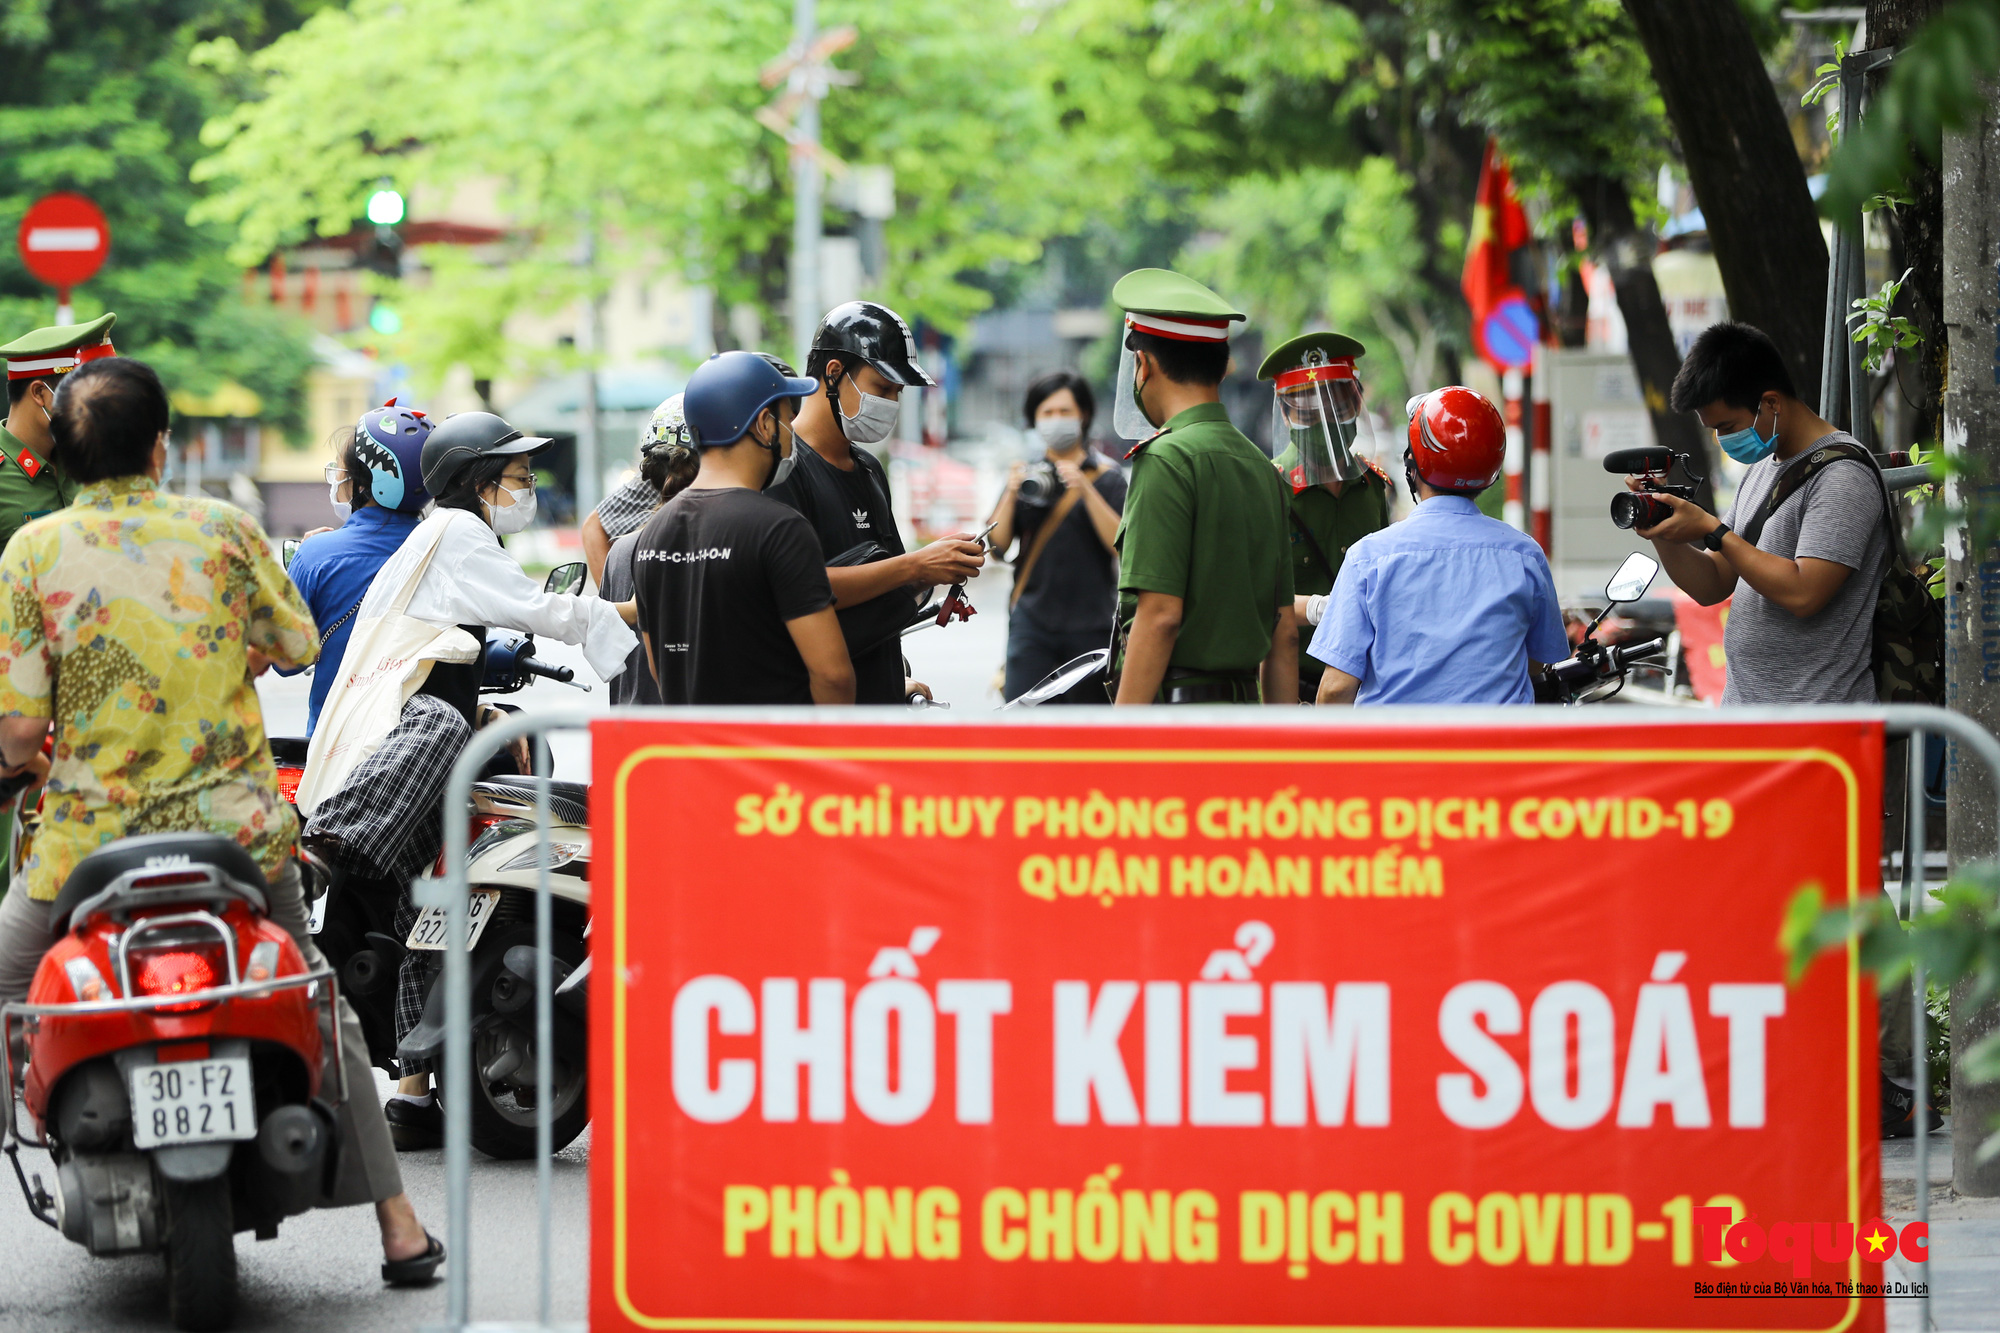 Công an quận Hoàn Kiếm triển khai tổ công tác đặc biệt kiểm soát giấy đi đường, nhiều trường hợp quay đầu bỏ chạy - Ảnh 7.